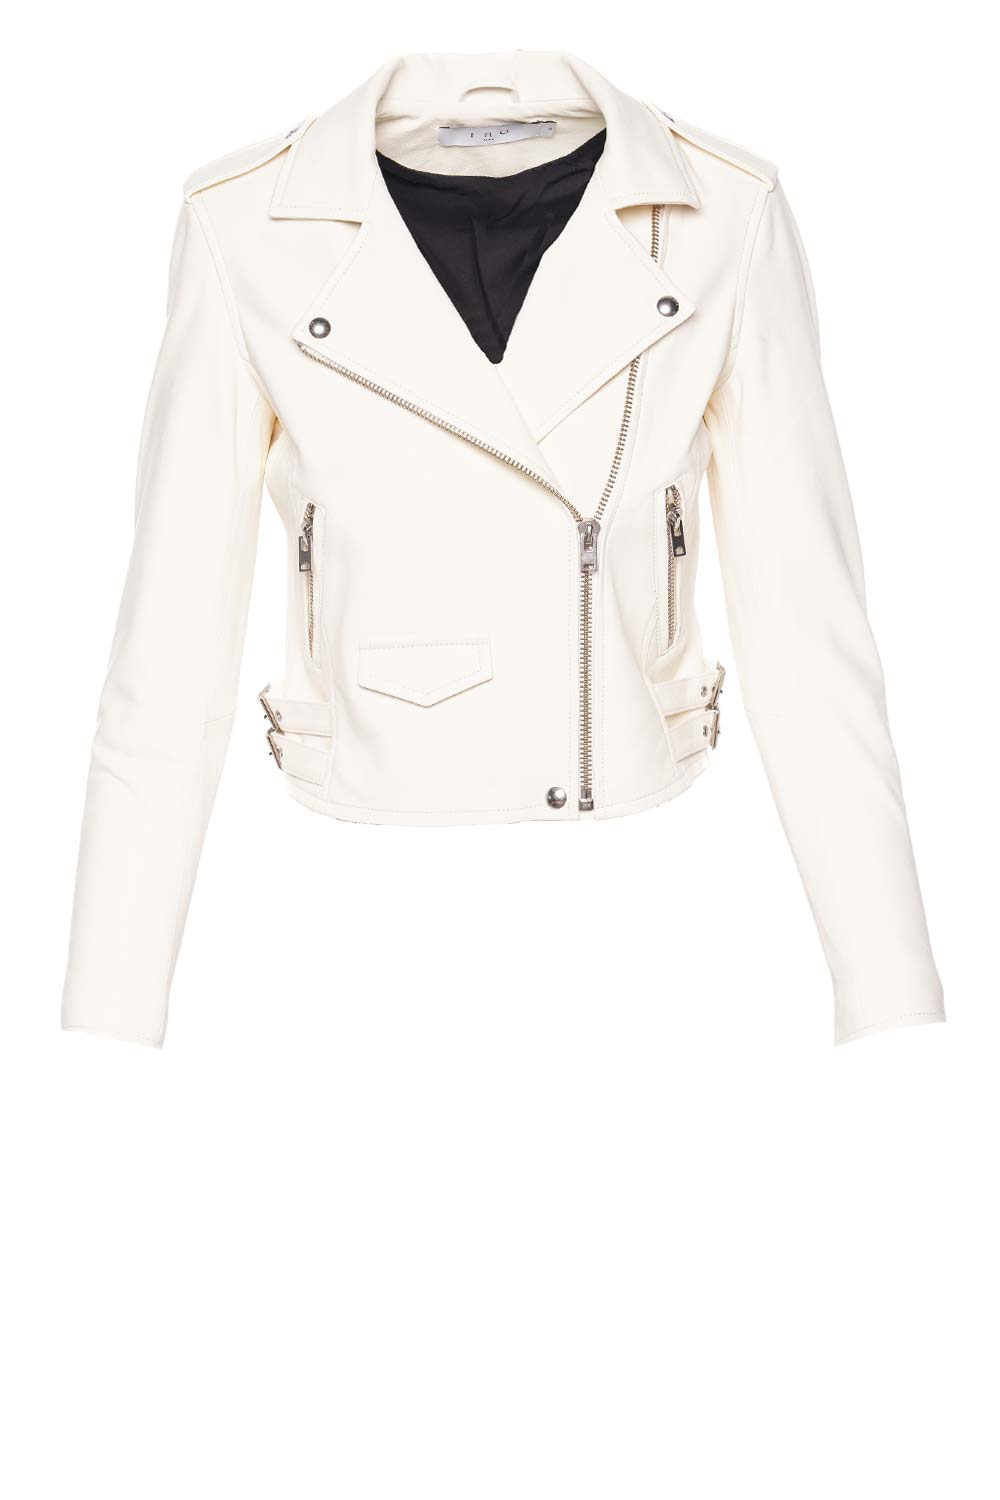 IRO Ashville Natural White Leather Jacket